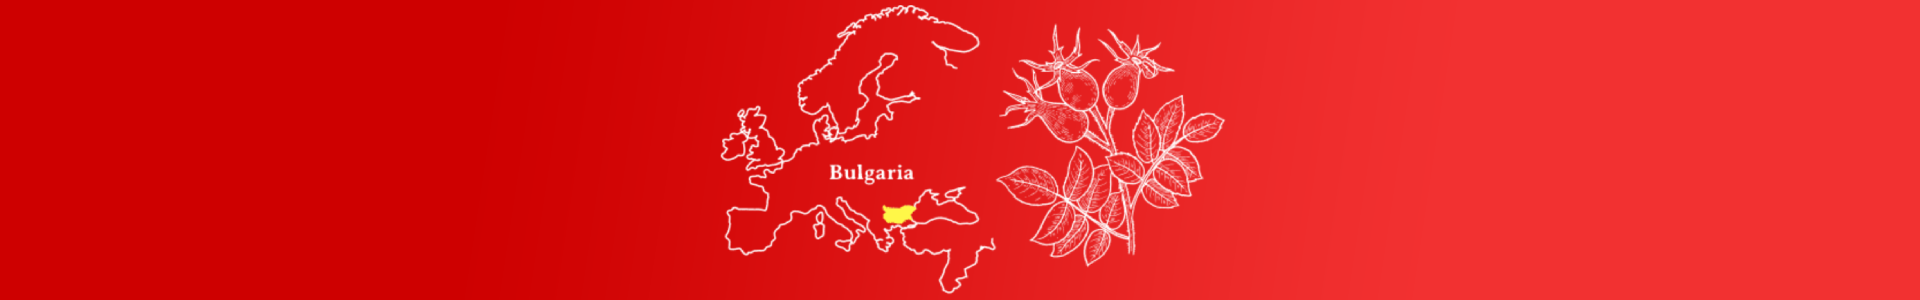 ZGP-bulgaria-map2.png